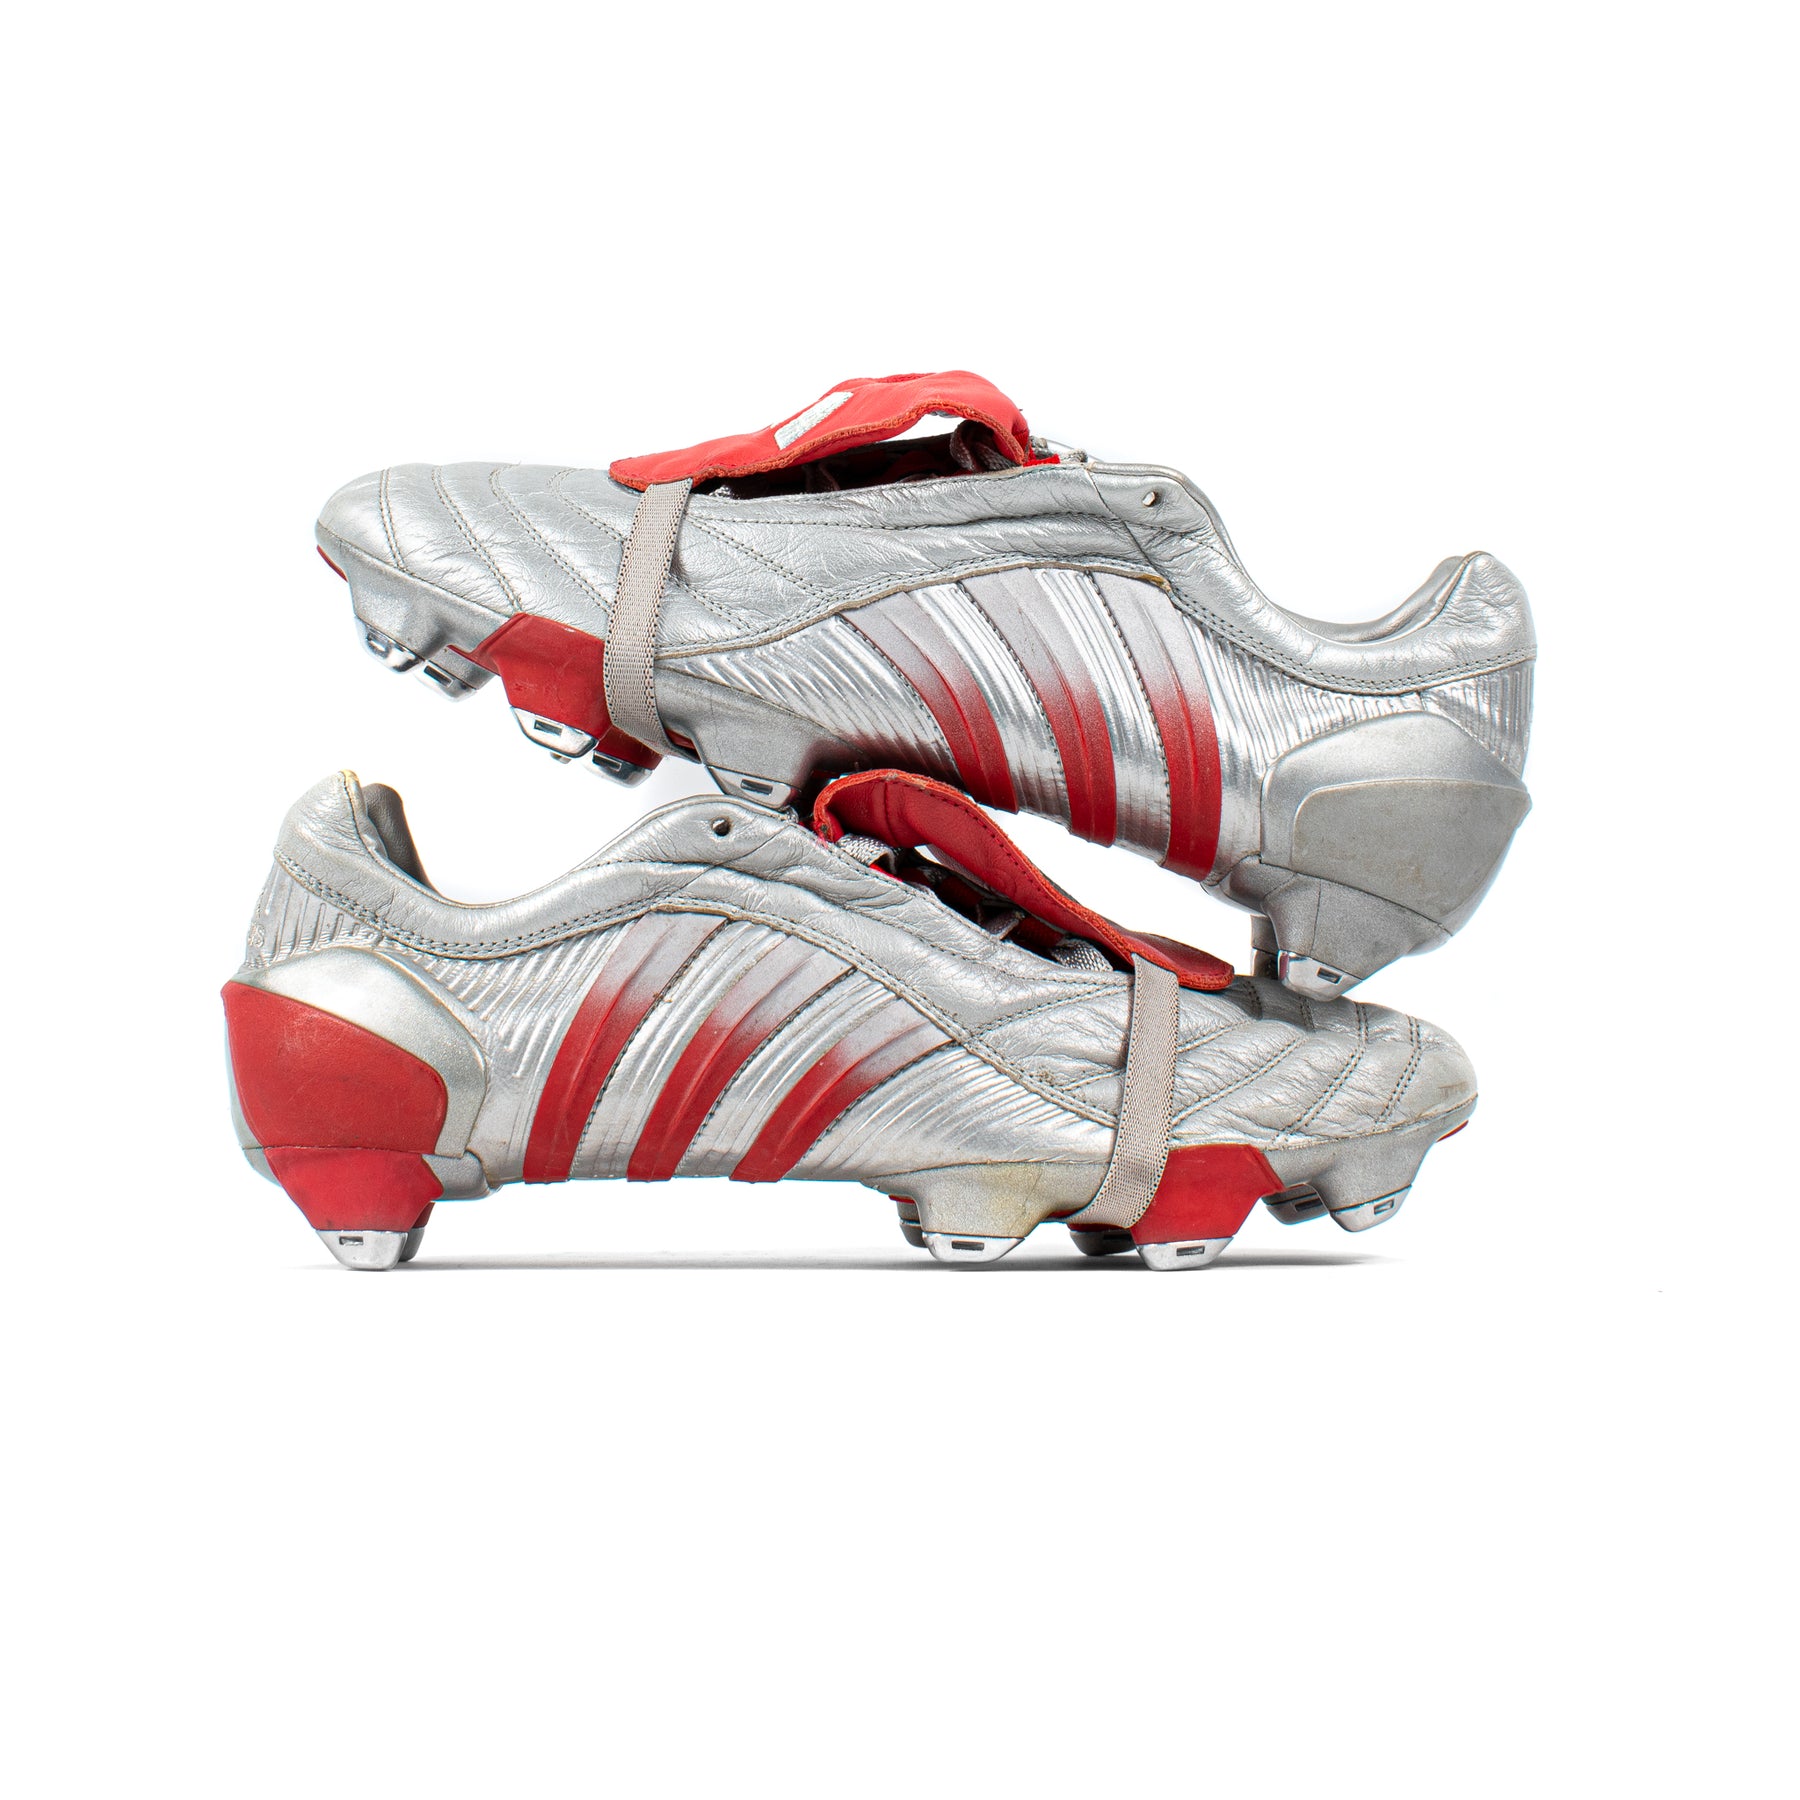 Belastingbetaler Aanleg ruimte Adidas Predator Pulse DB Sample Silver Red SG – Classic Soccer Cleats